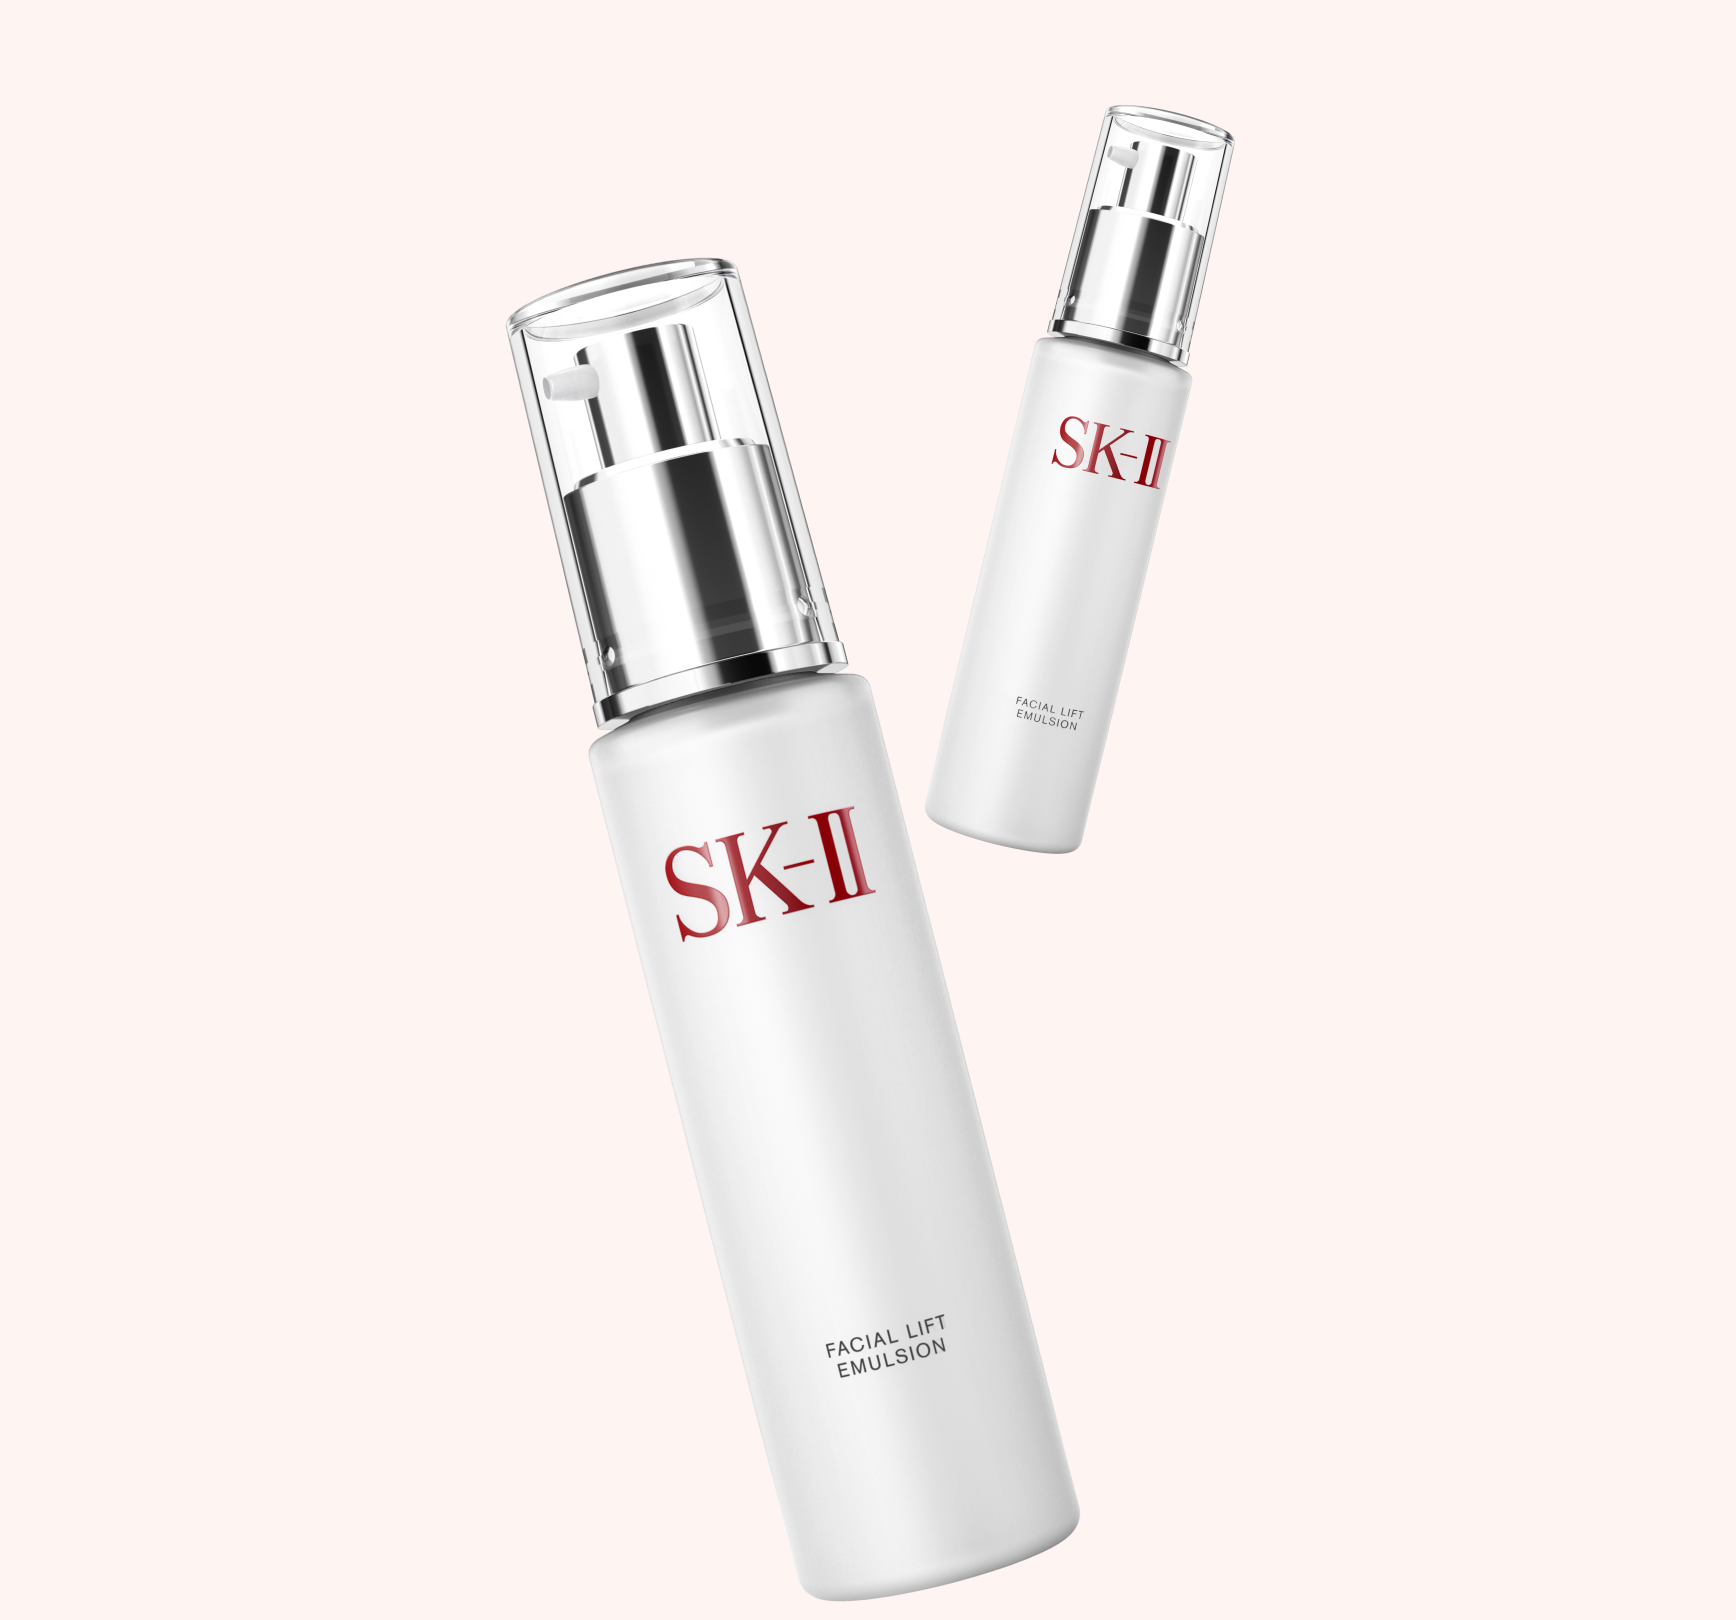 晶緻活膚乳液- 緊緻臉部肌膚保養品| SK-II 台灣